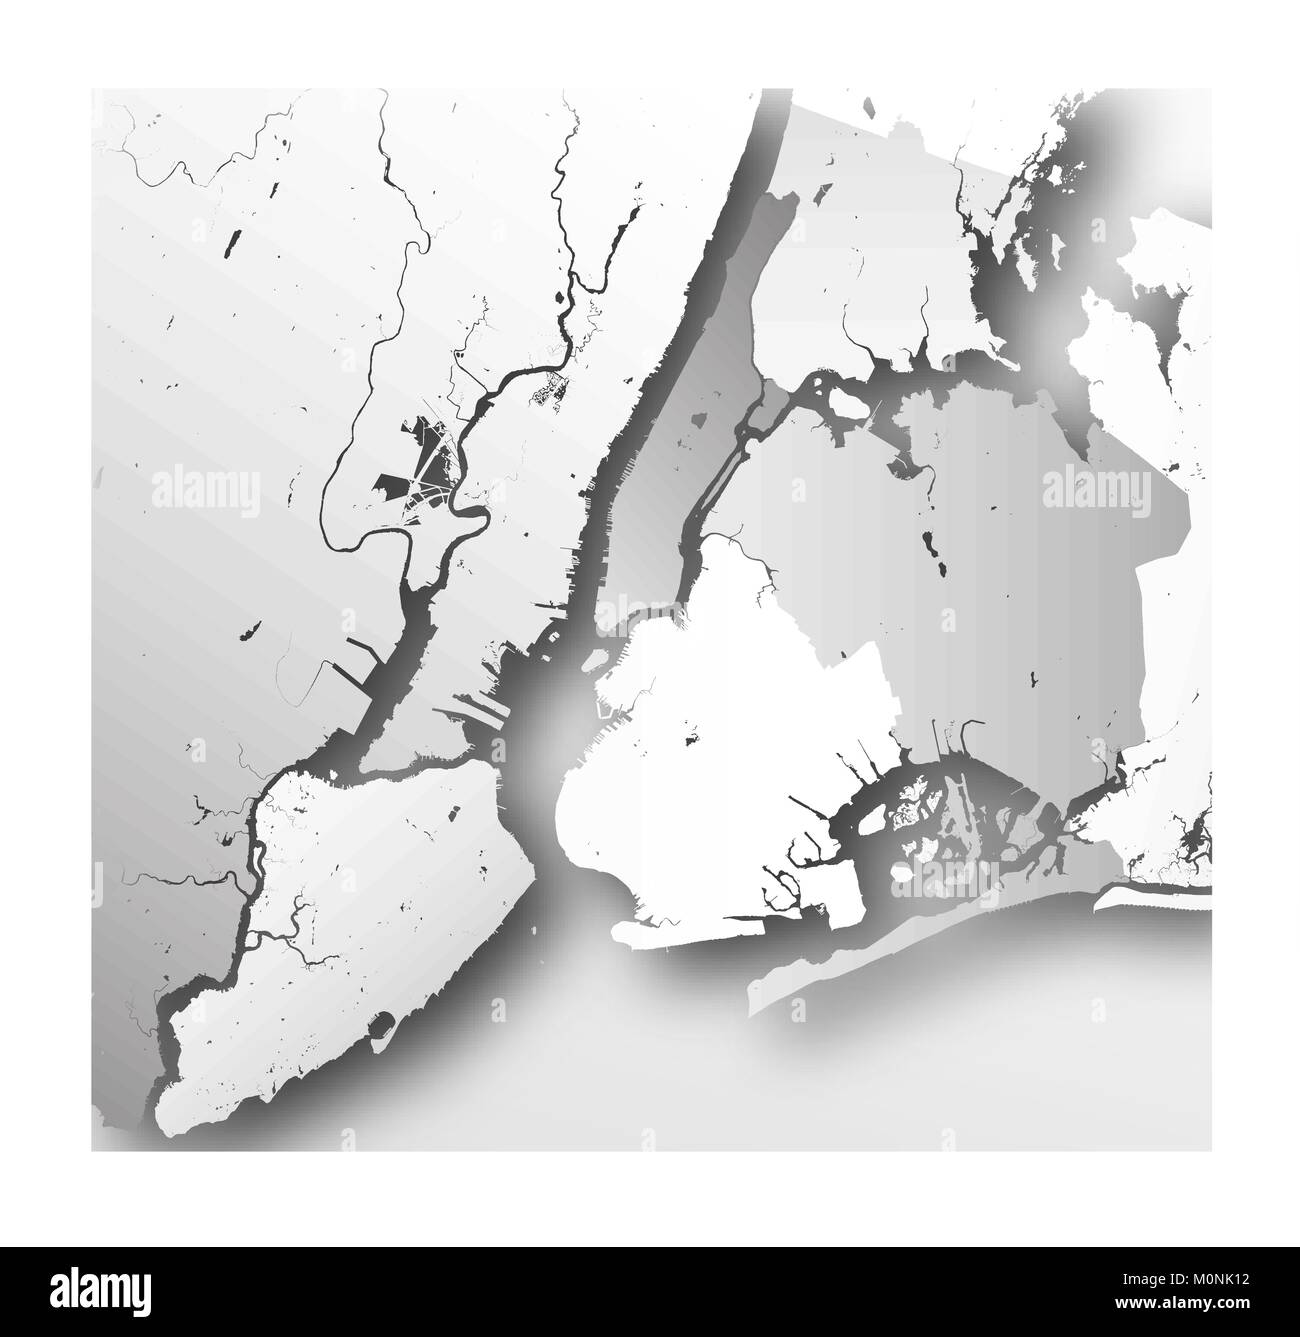 La carte haute résolution de la ville de New York avec les quartiers de New York. Illustration de Vecteur